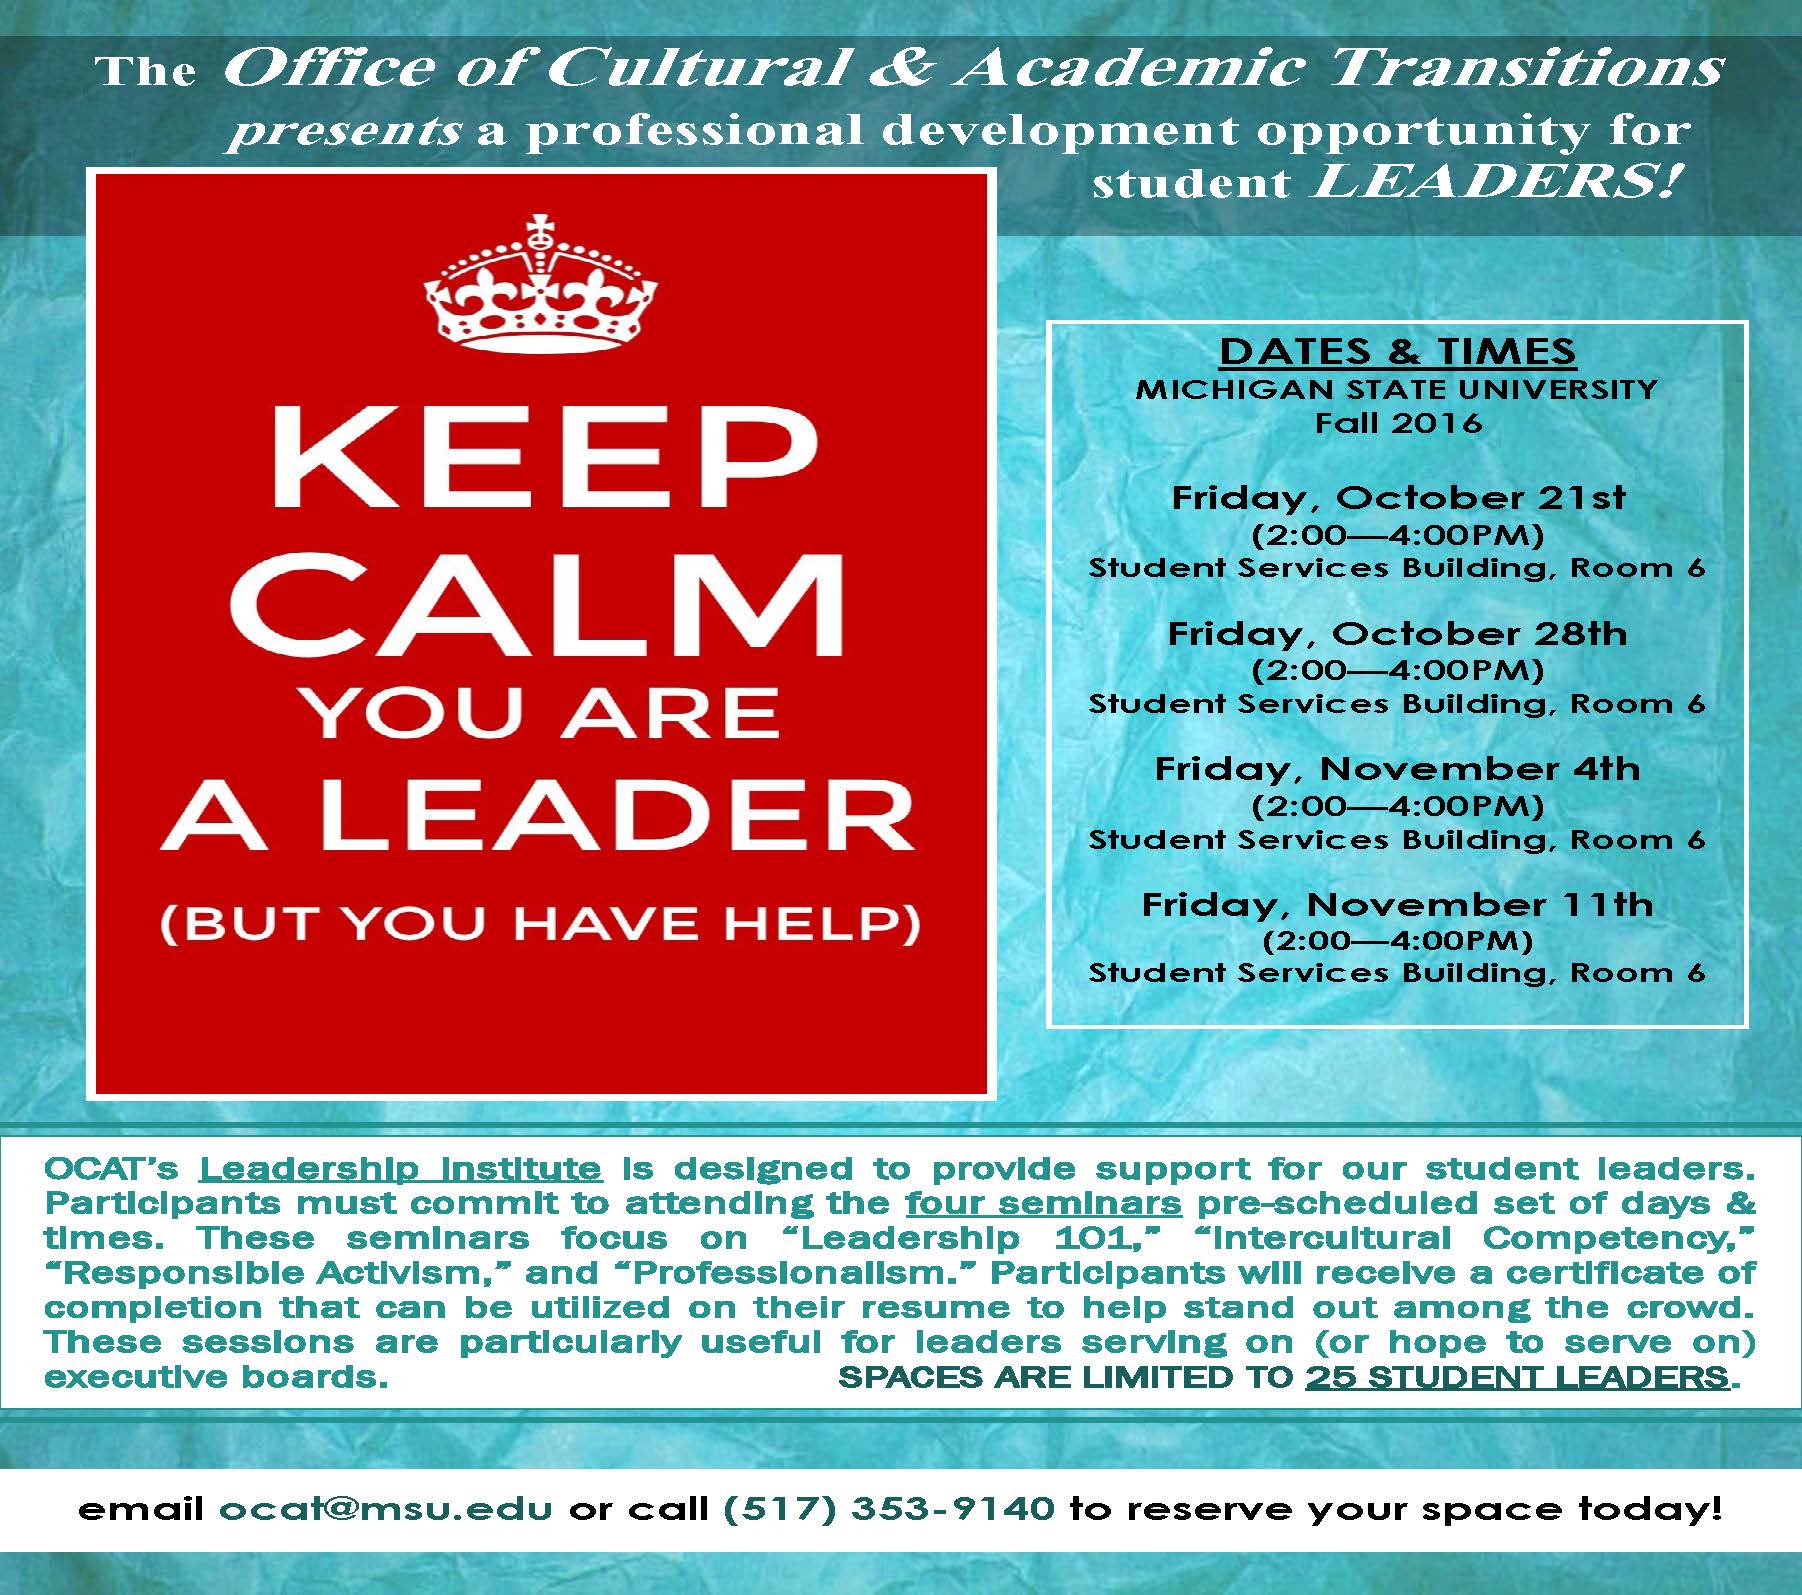 OCAT’s Leadership Institute